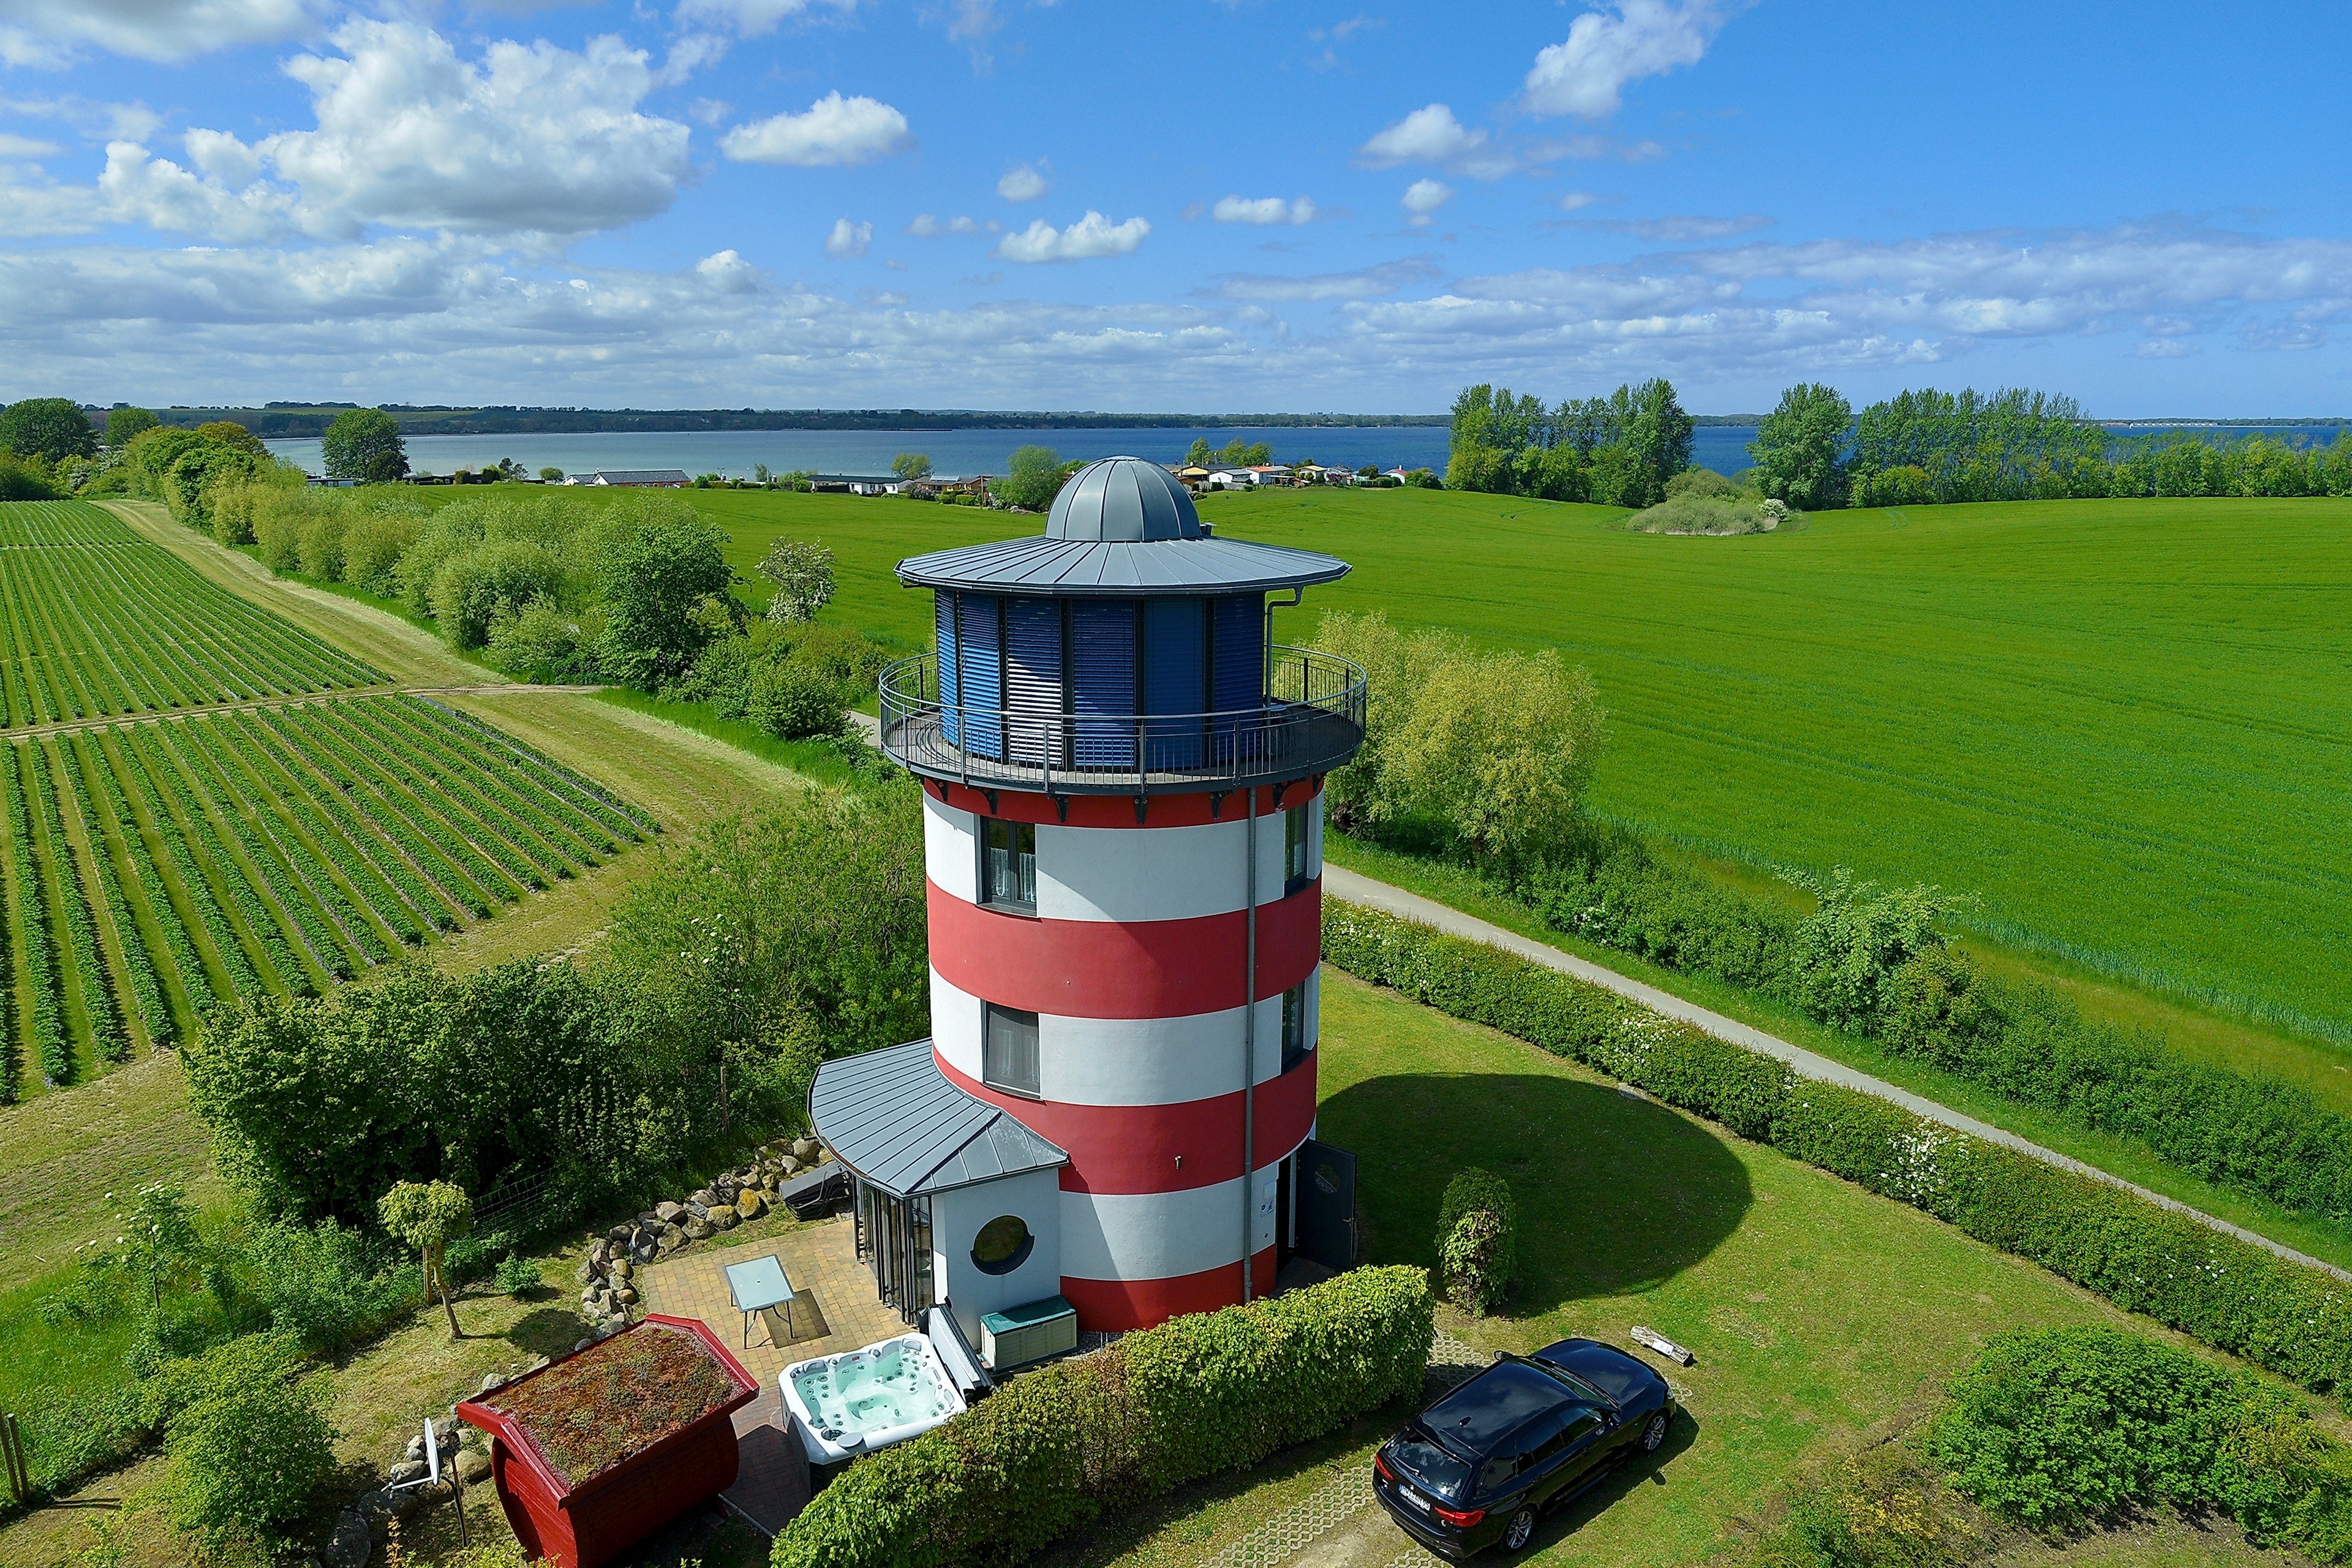 Wohnleuchtturm mit Seeblick Leuchty Ferienhaus in Mecklenburg Vorpommern